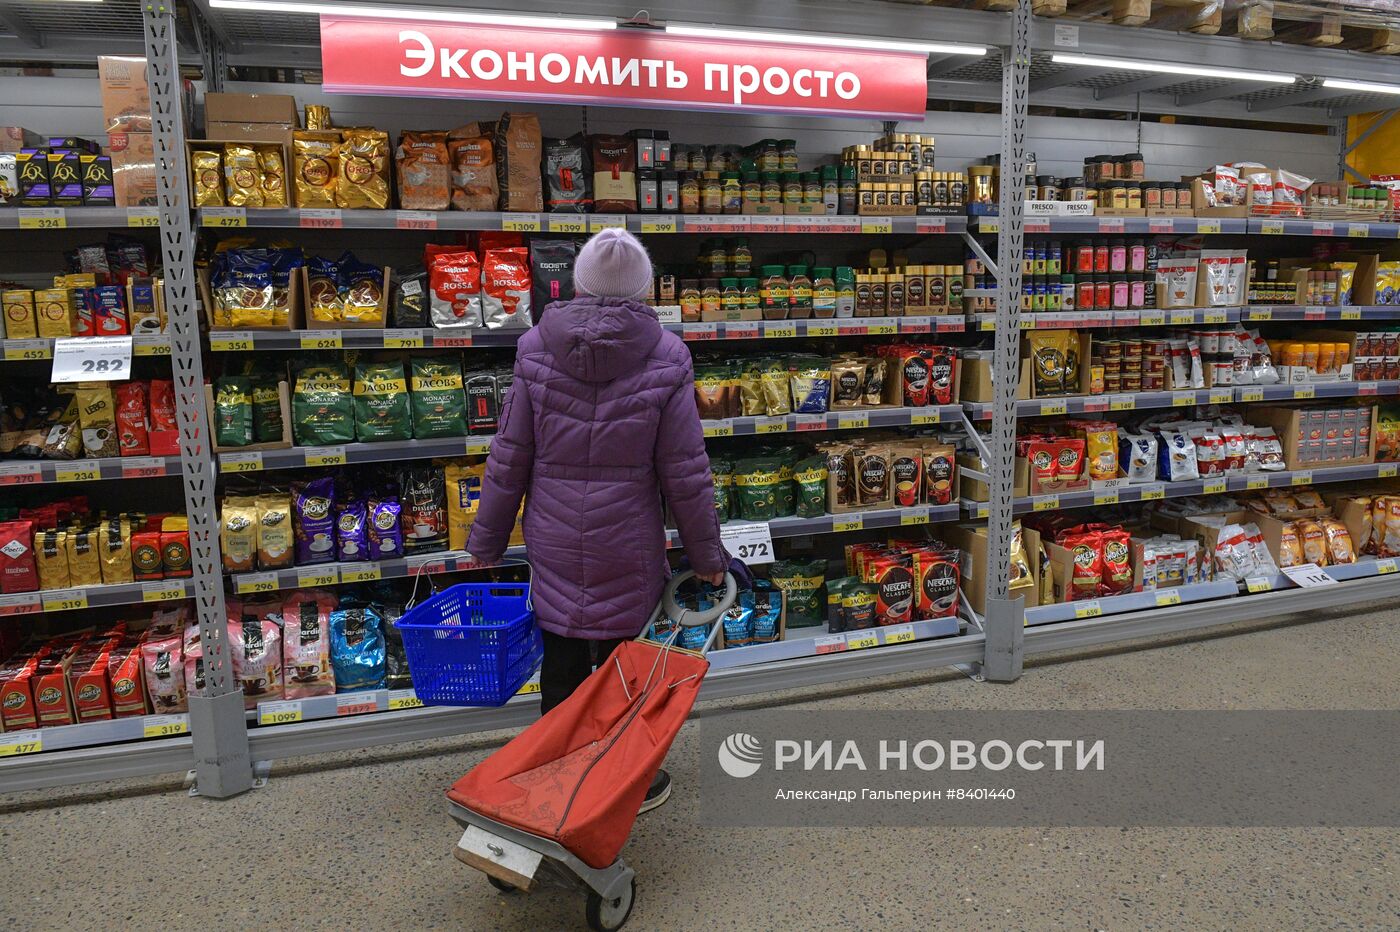 Гипермаркет "Лента Эконом" в Санкт-Петербурге